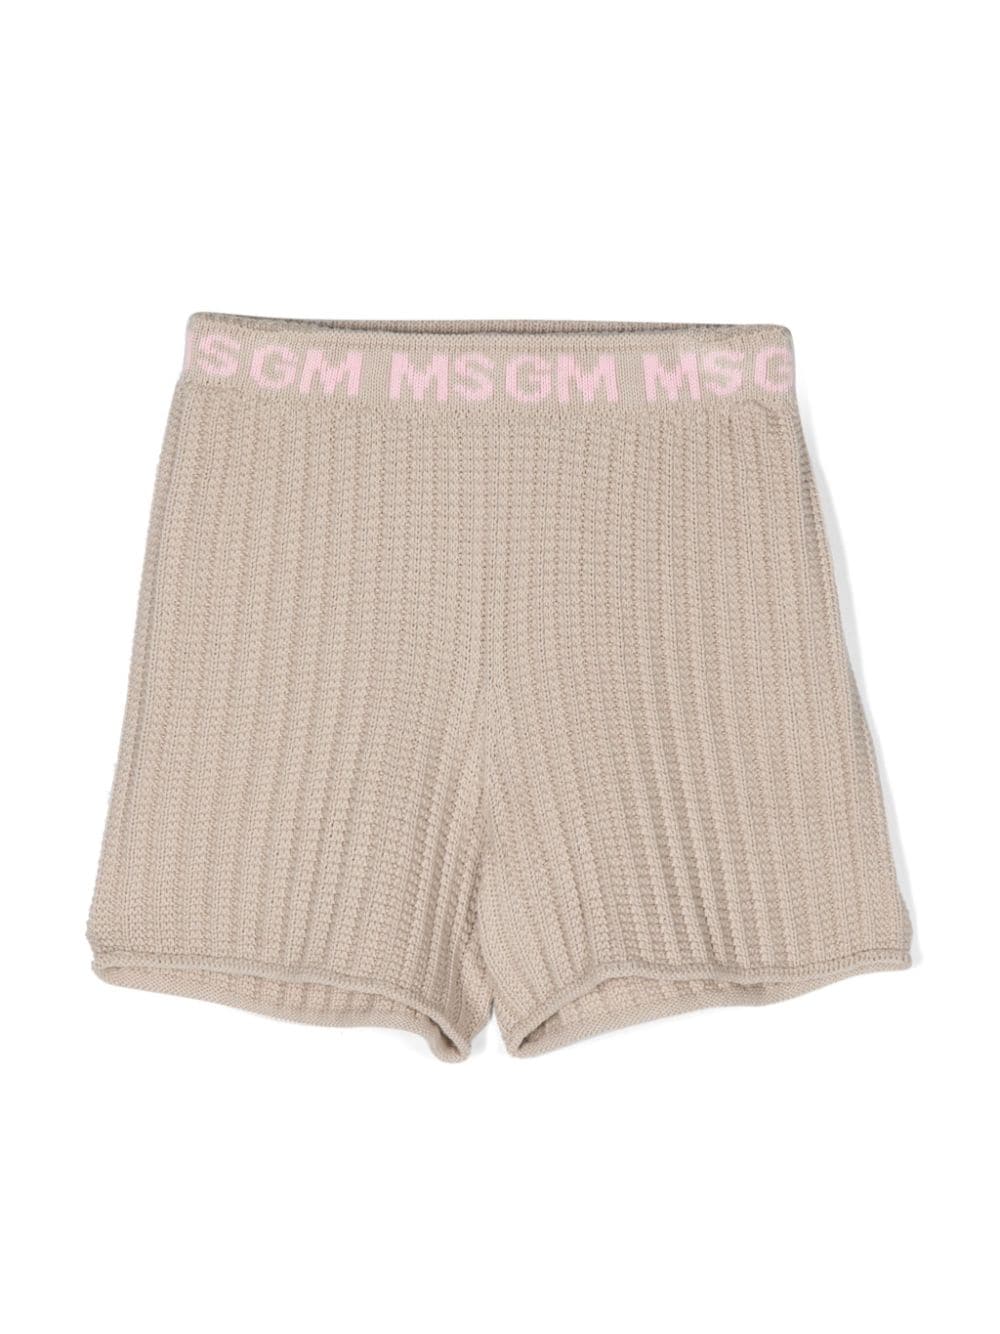 Msgm Kids' 针织棉短裤 In Neutrals